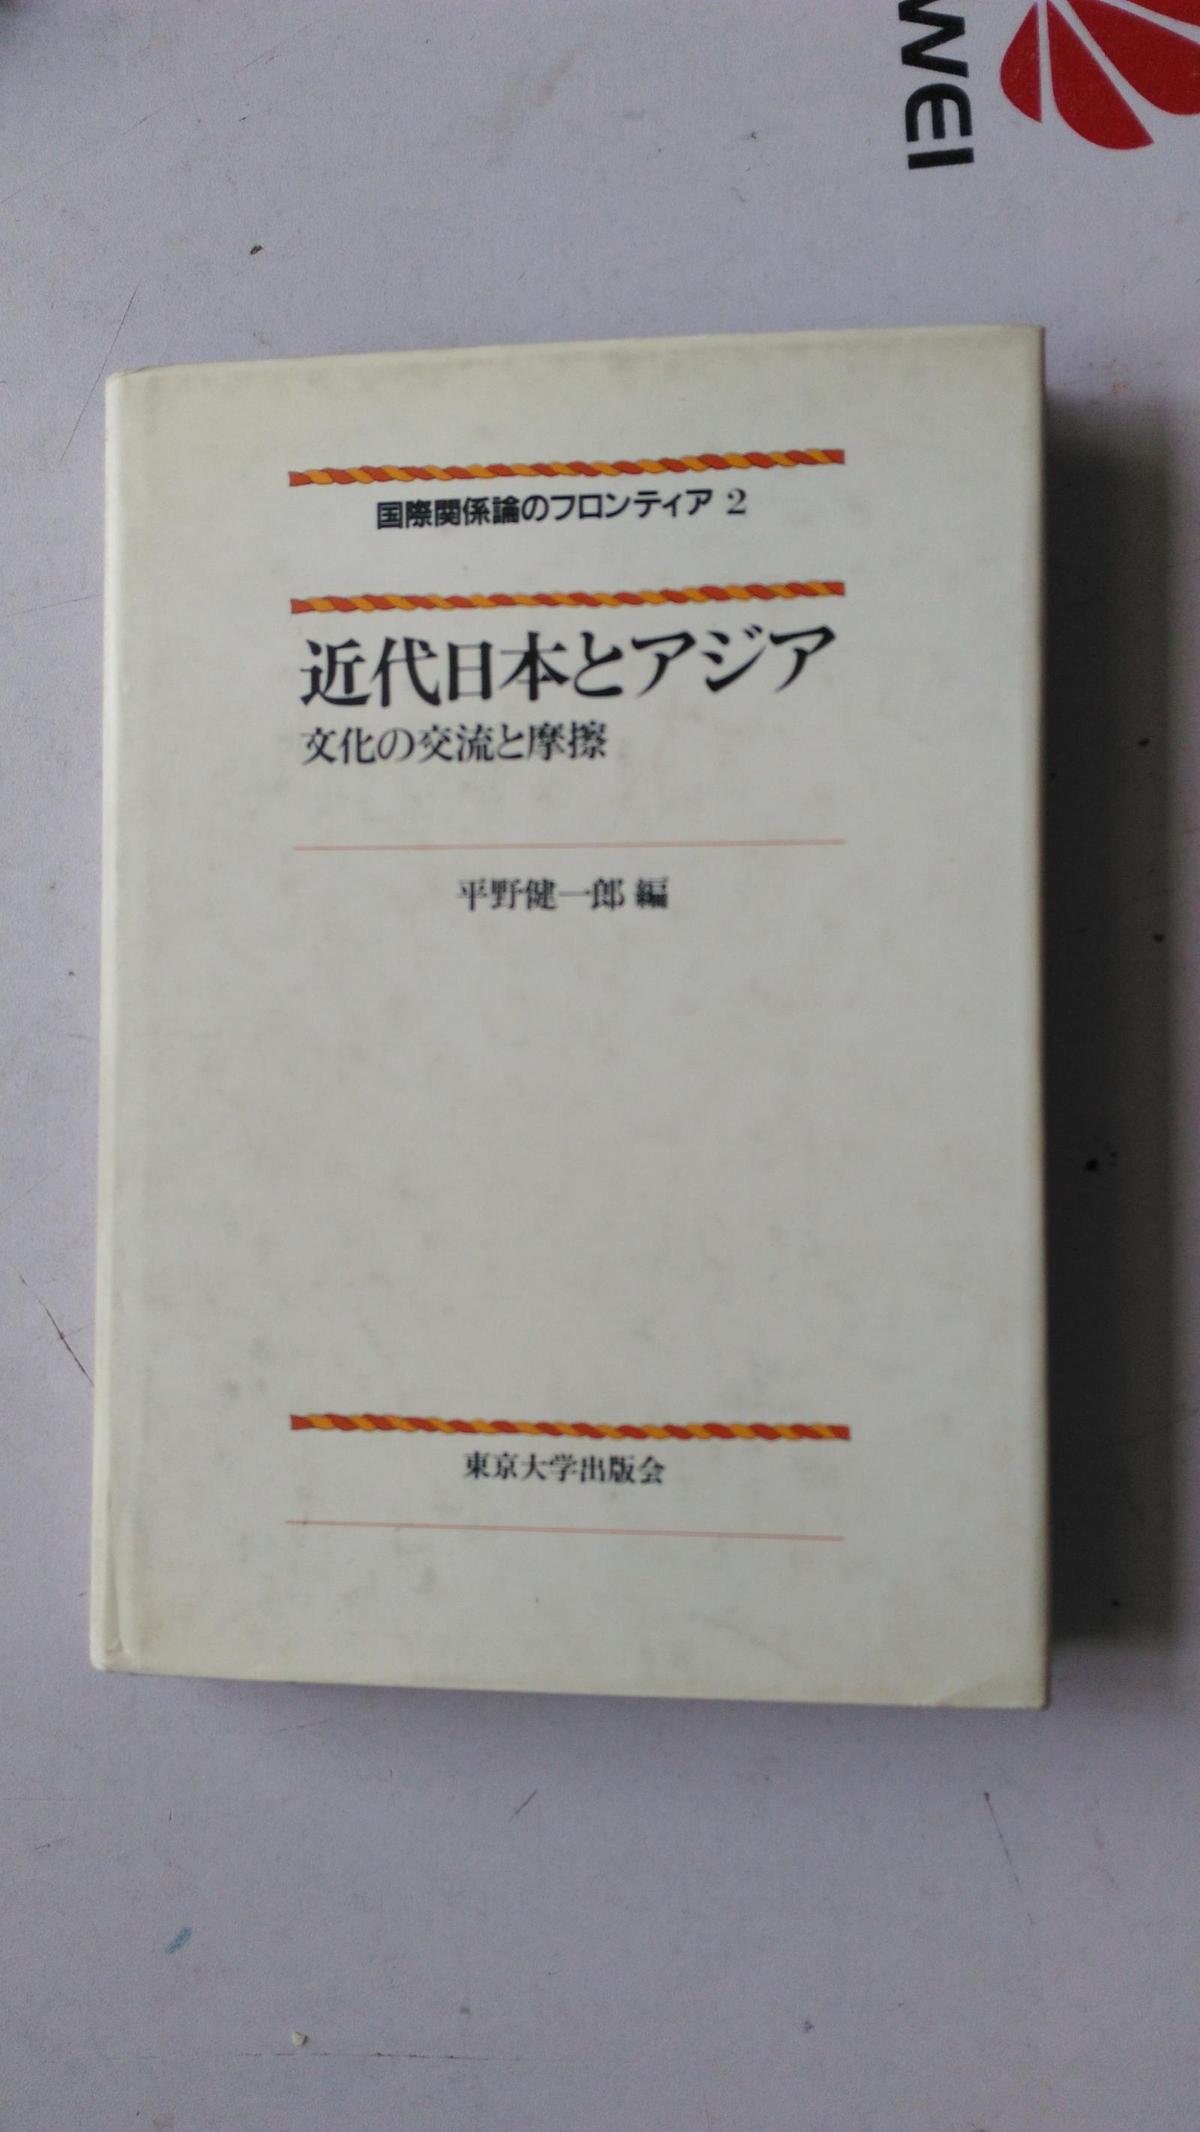 日文原版   近代日本とアジア  文化の交流と摩擦   中文译名;近代日本和亚洲文化的交流和摩擦